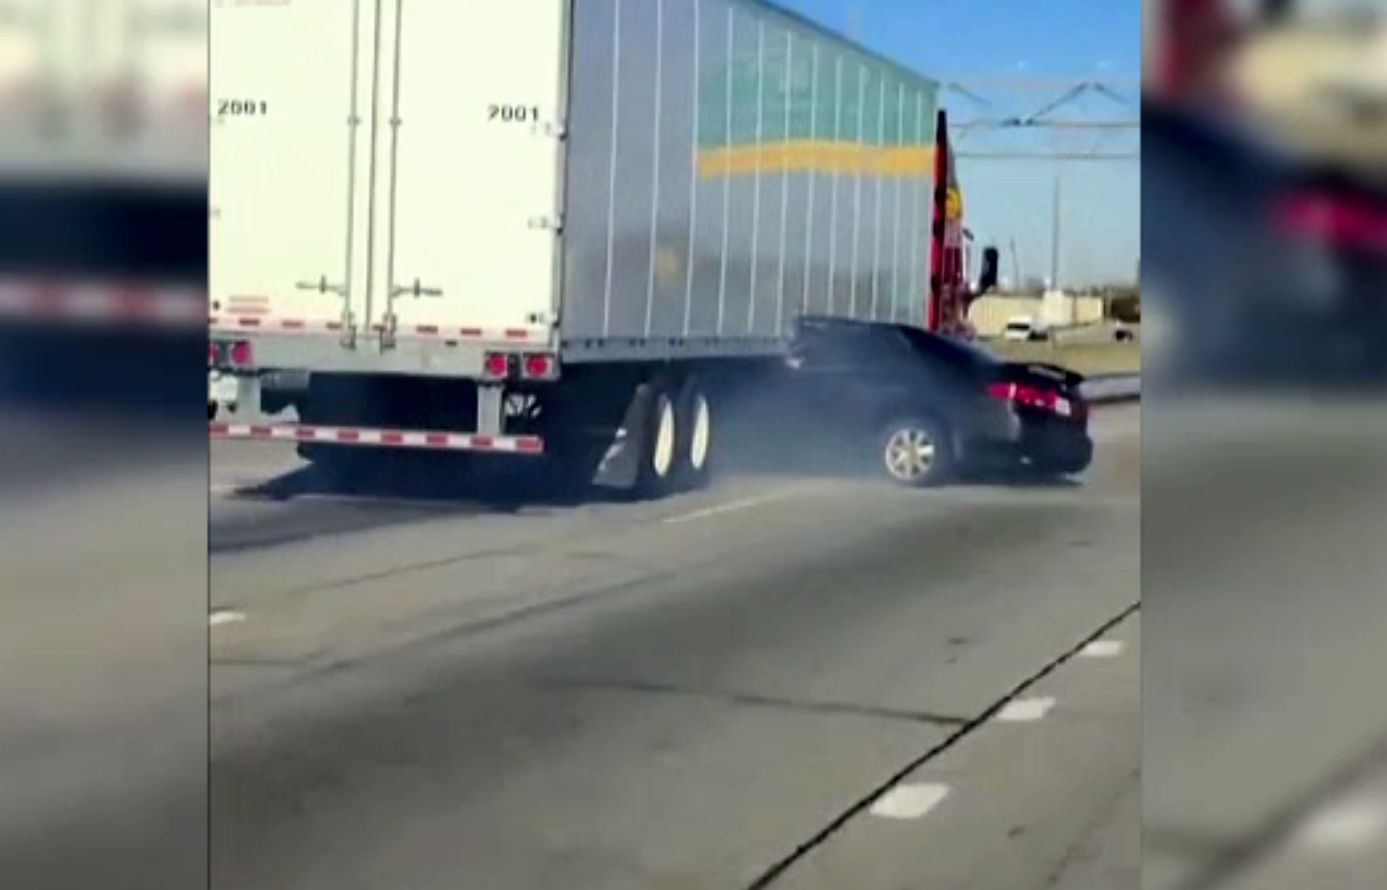 Un camion circula cu un o mașină blocată sub el, în timp ce șoferul făcea semne disperate cu mâna. Ce se întâmplase